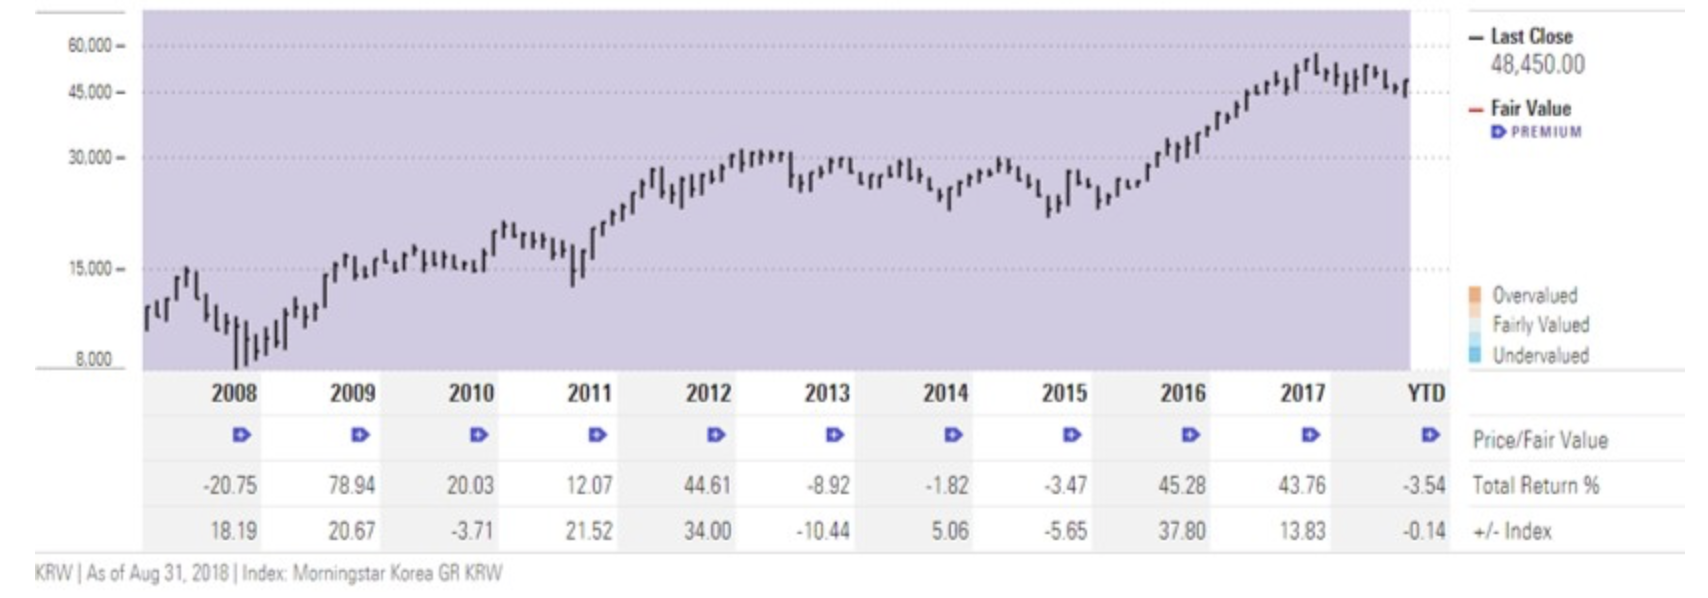 サムスン電子の株価指標